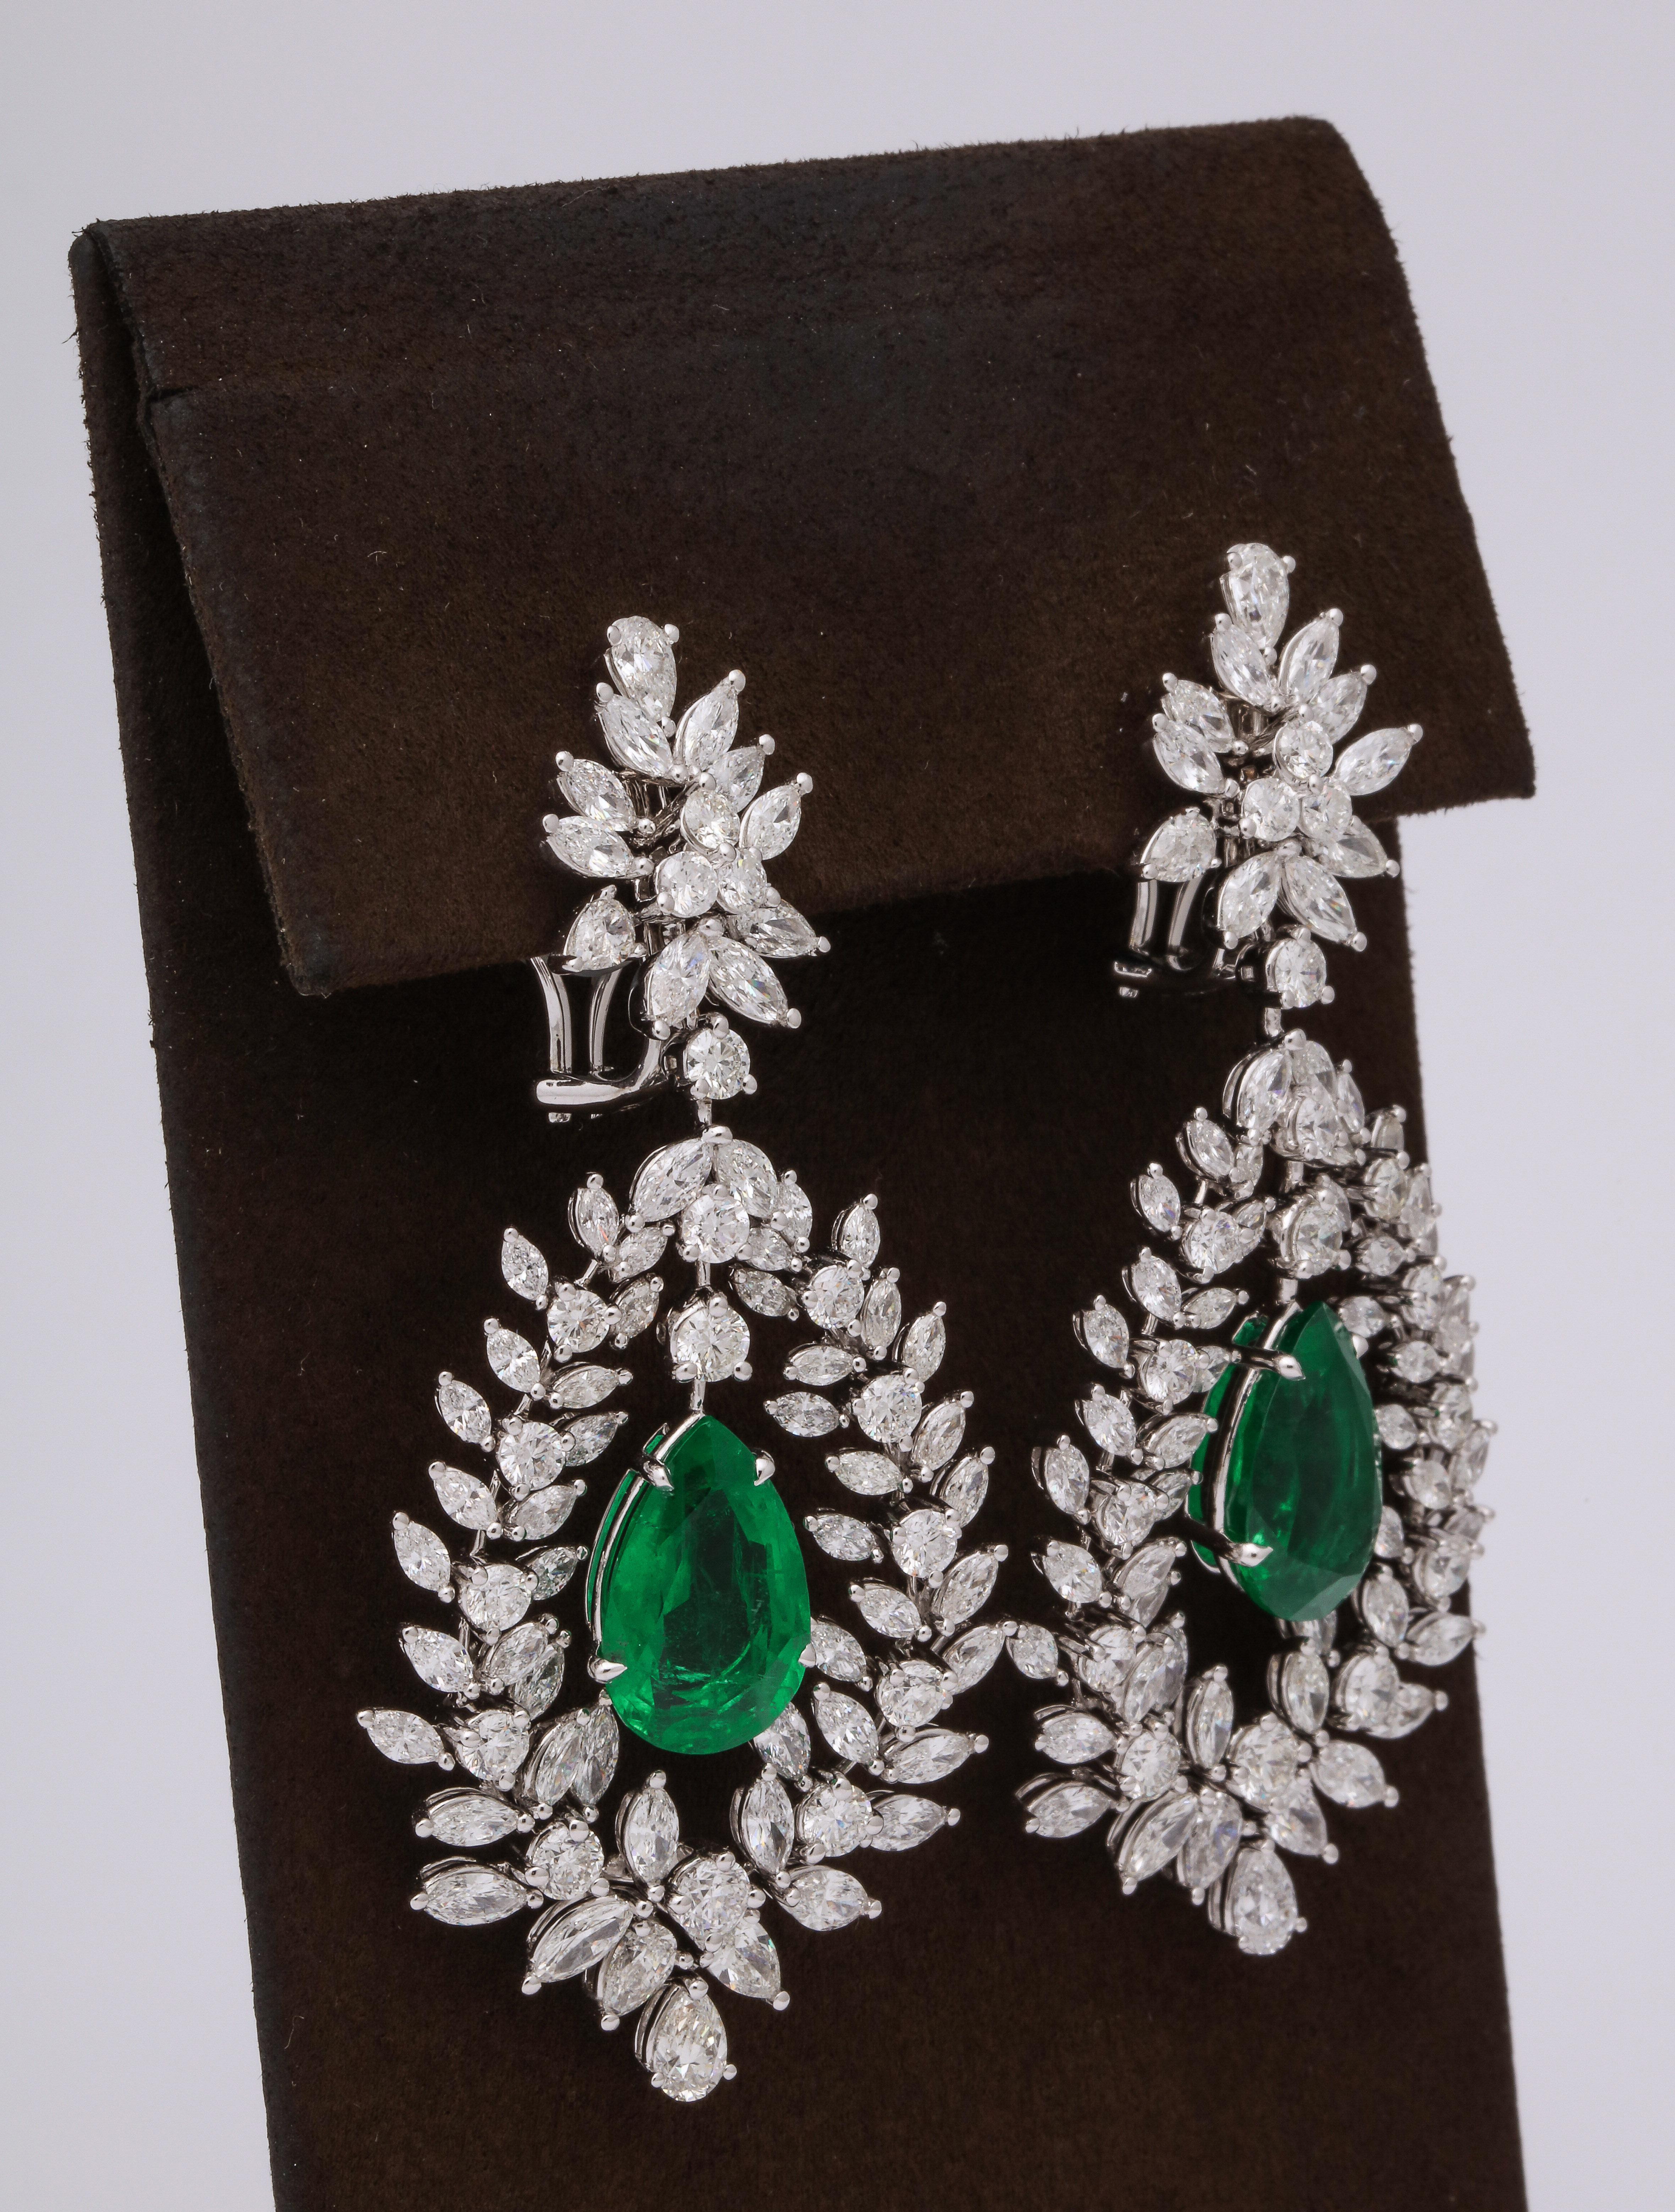 
Ein großartiges Paar Smaragd- und Diamant-Ohrringe zum Hängen 

11.67 Karat zertifizierte VIVID GREEN Smaragde. 

16.30 Karat weiße Diamanten, alle in 18 Karat Weißgold gefasst. 

Ungefähr 6,5 cm lang und 3 cm breit. 

Zertifiziert von Christian